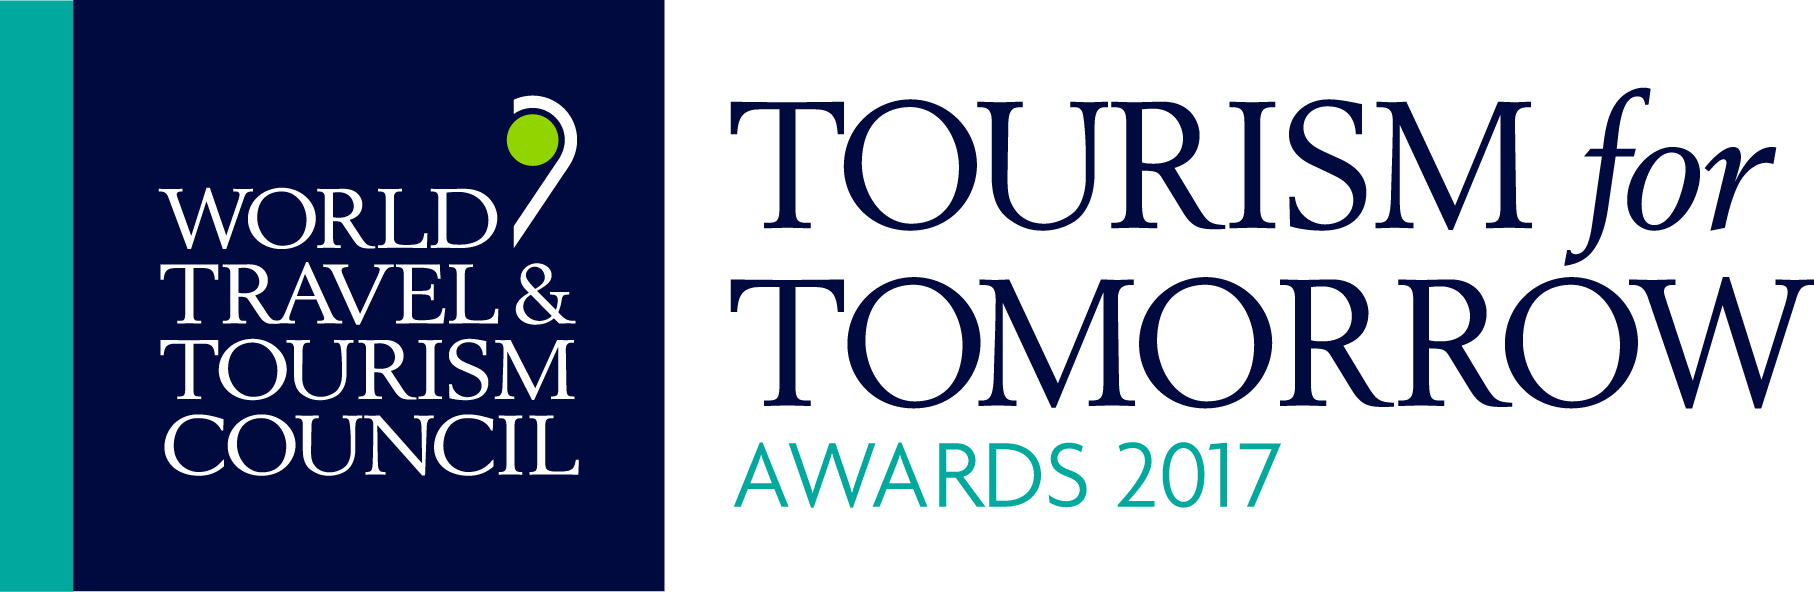 2017 WTTC Tourism for Tomorrow Awards